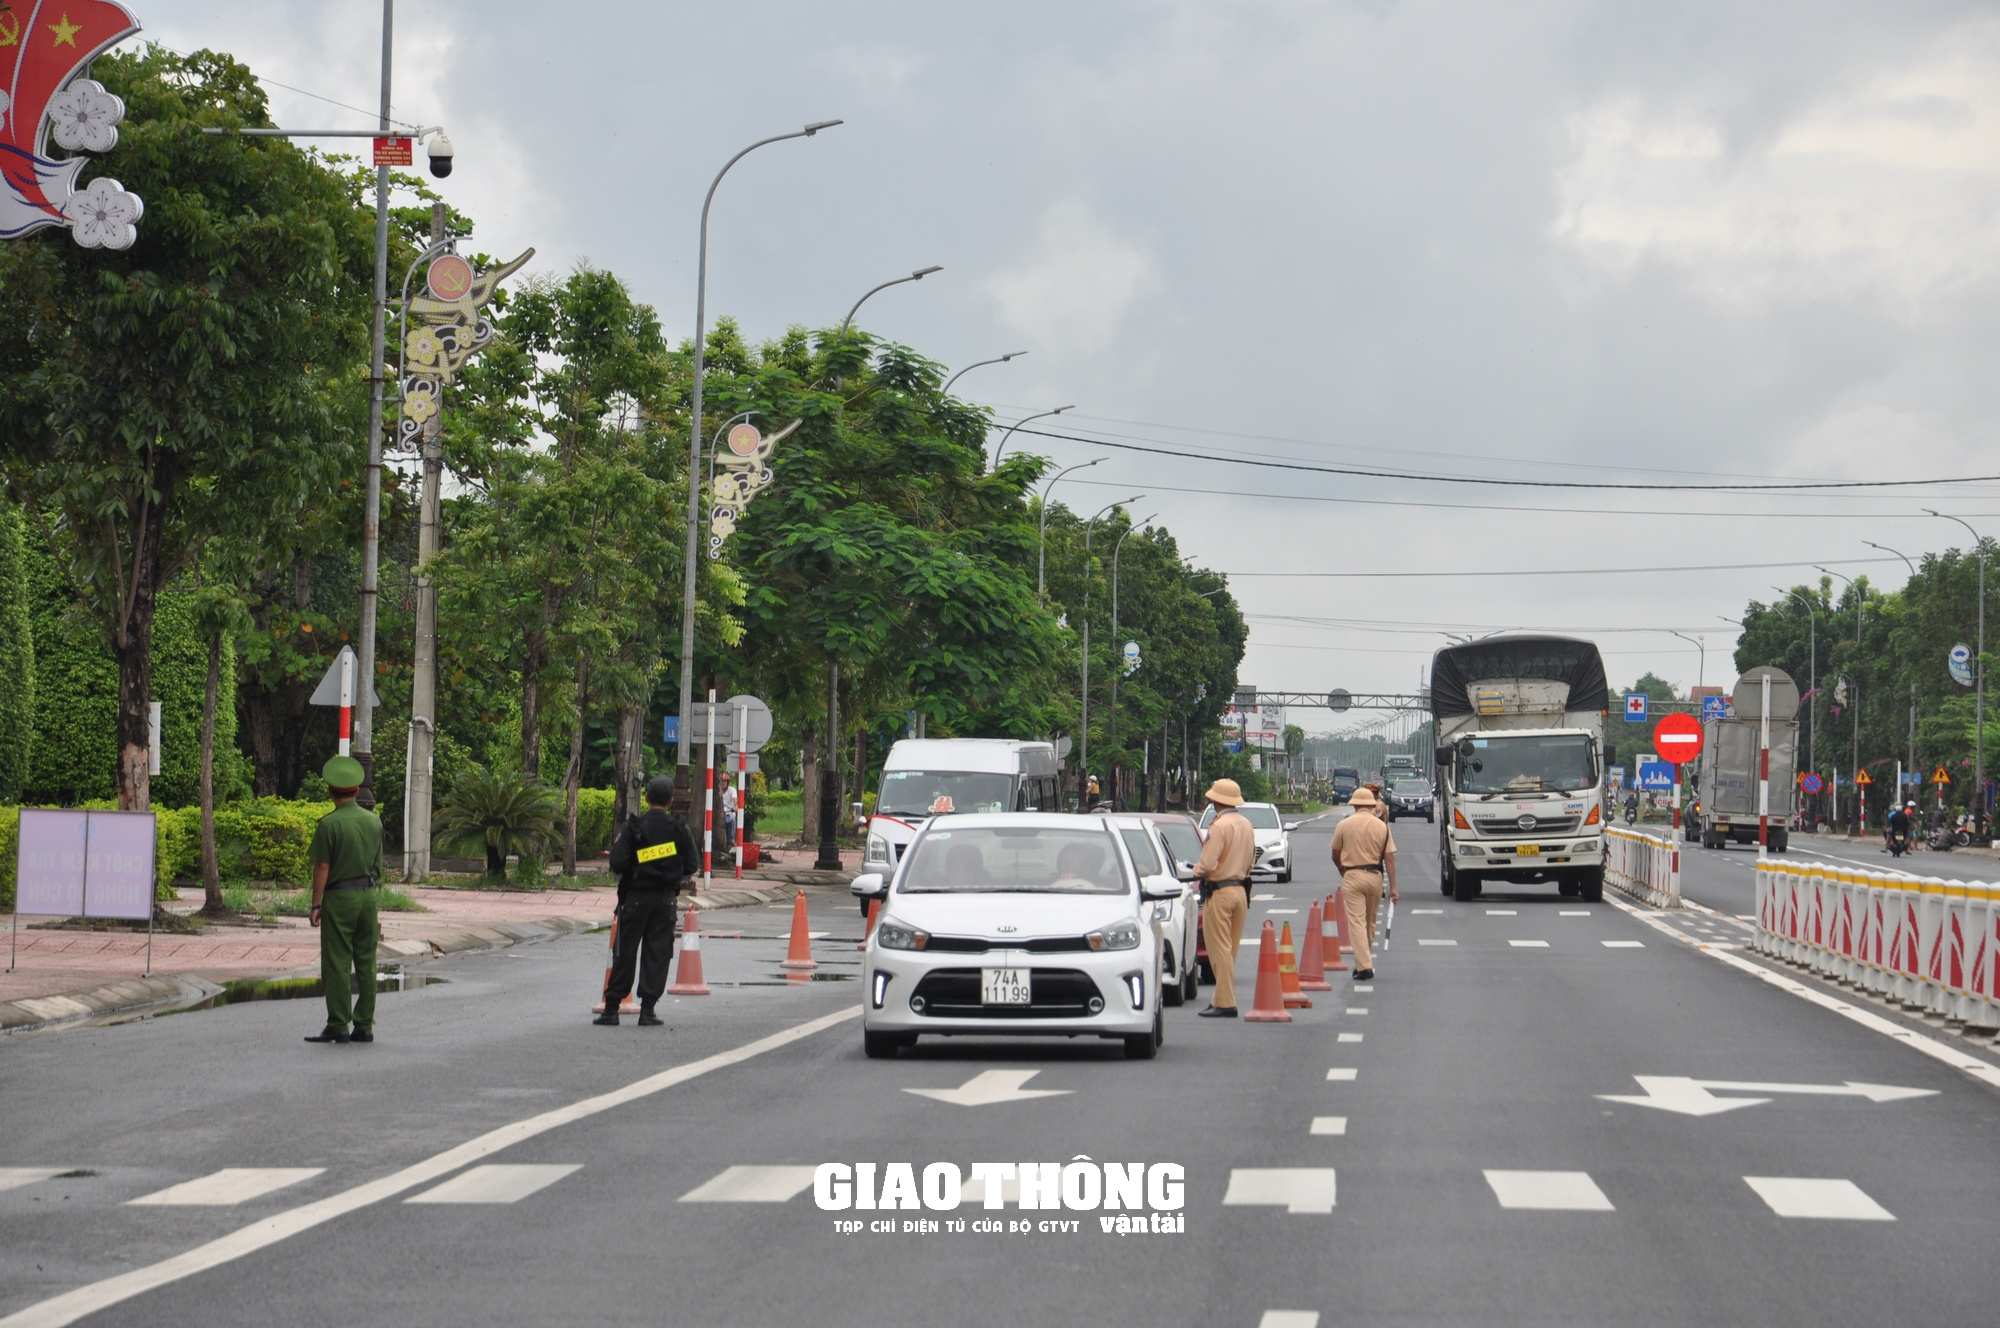 Dàn trận xử lý nồng độ cồn trên QL1 ở tỉnh Thừa Thiên-Huế: Loạt người vi phạm sau bữa ăn trưa - Ảnh 9.